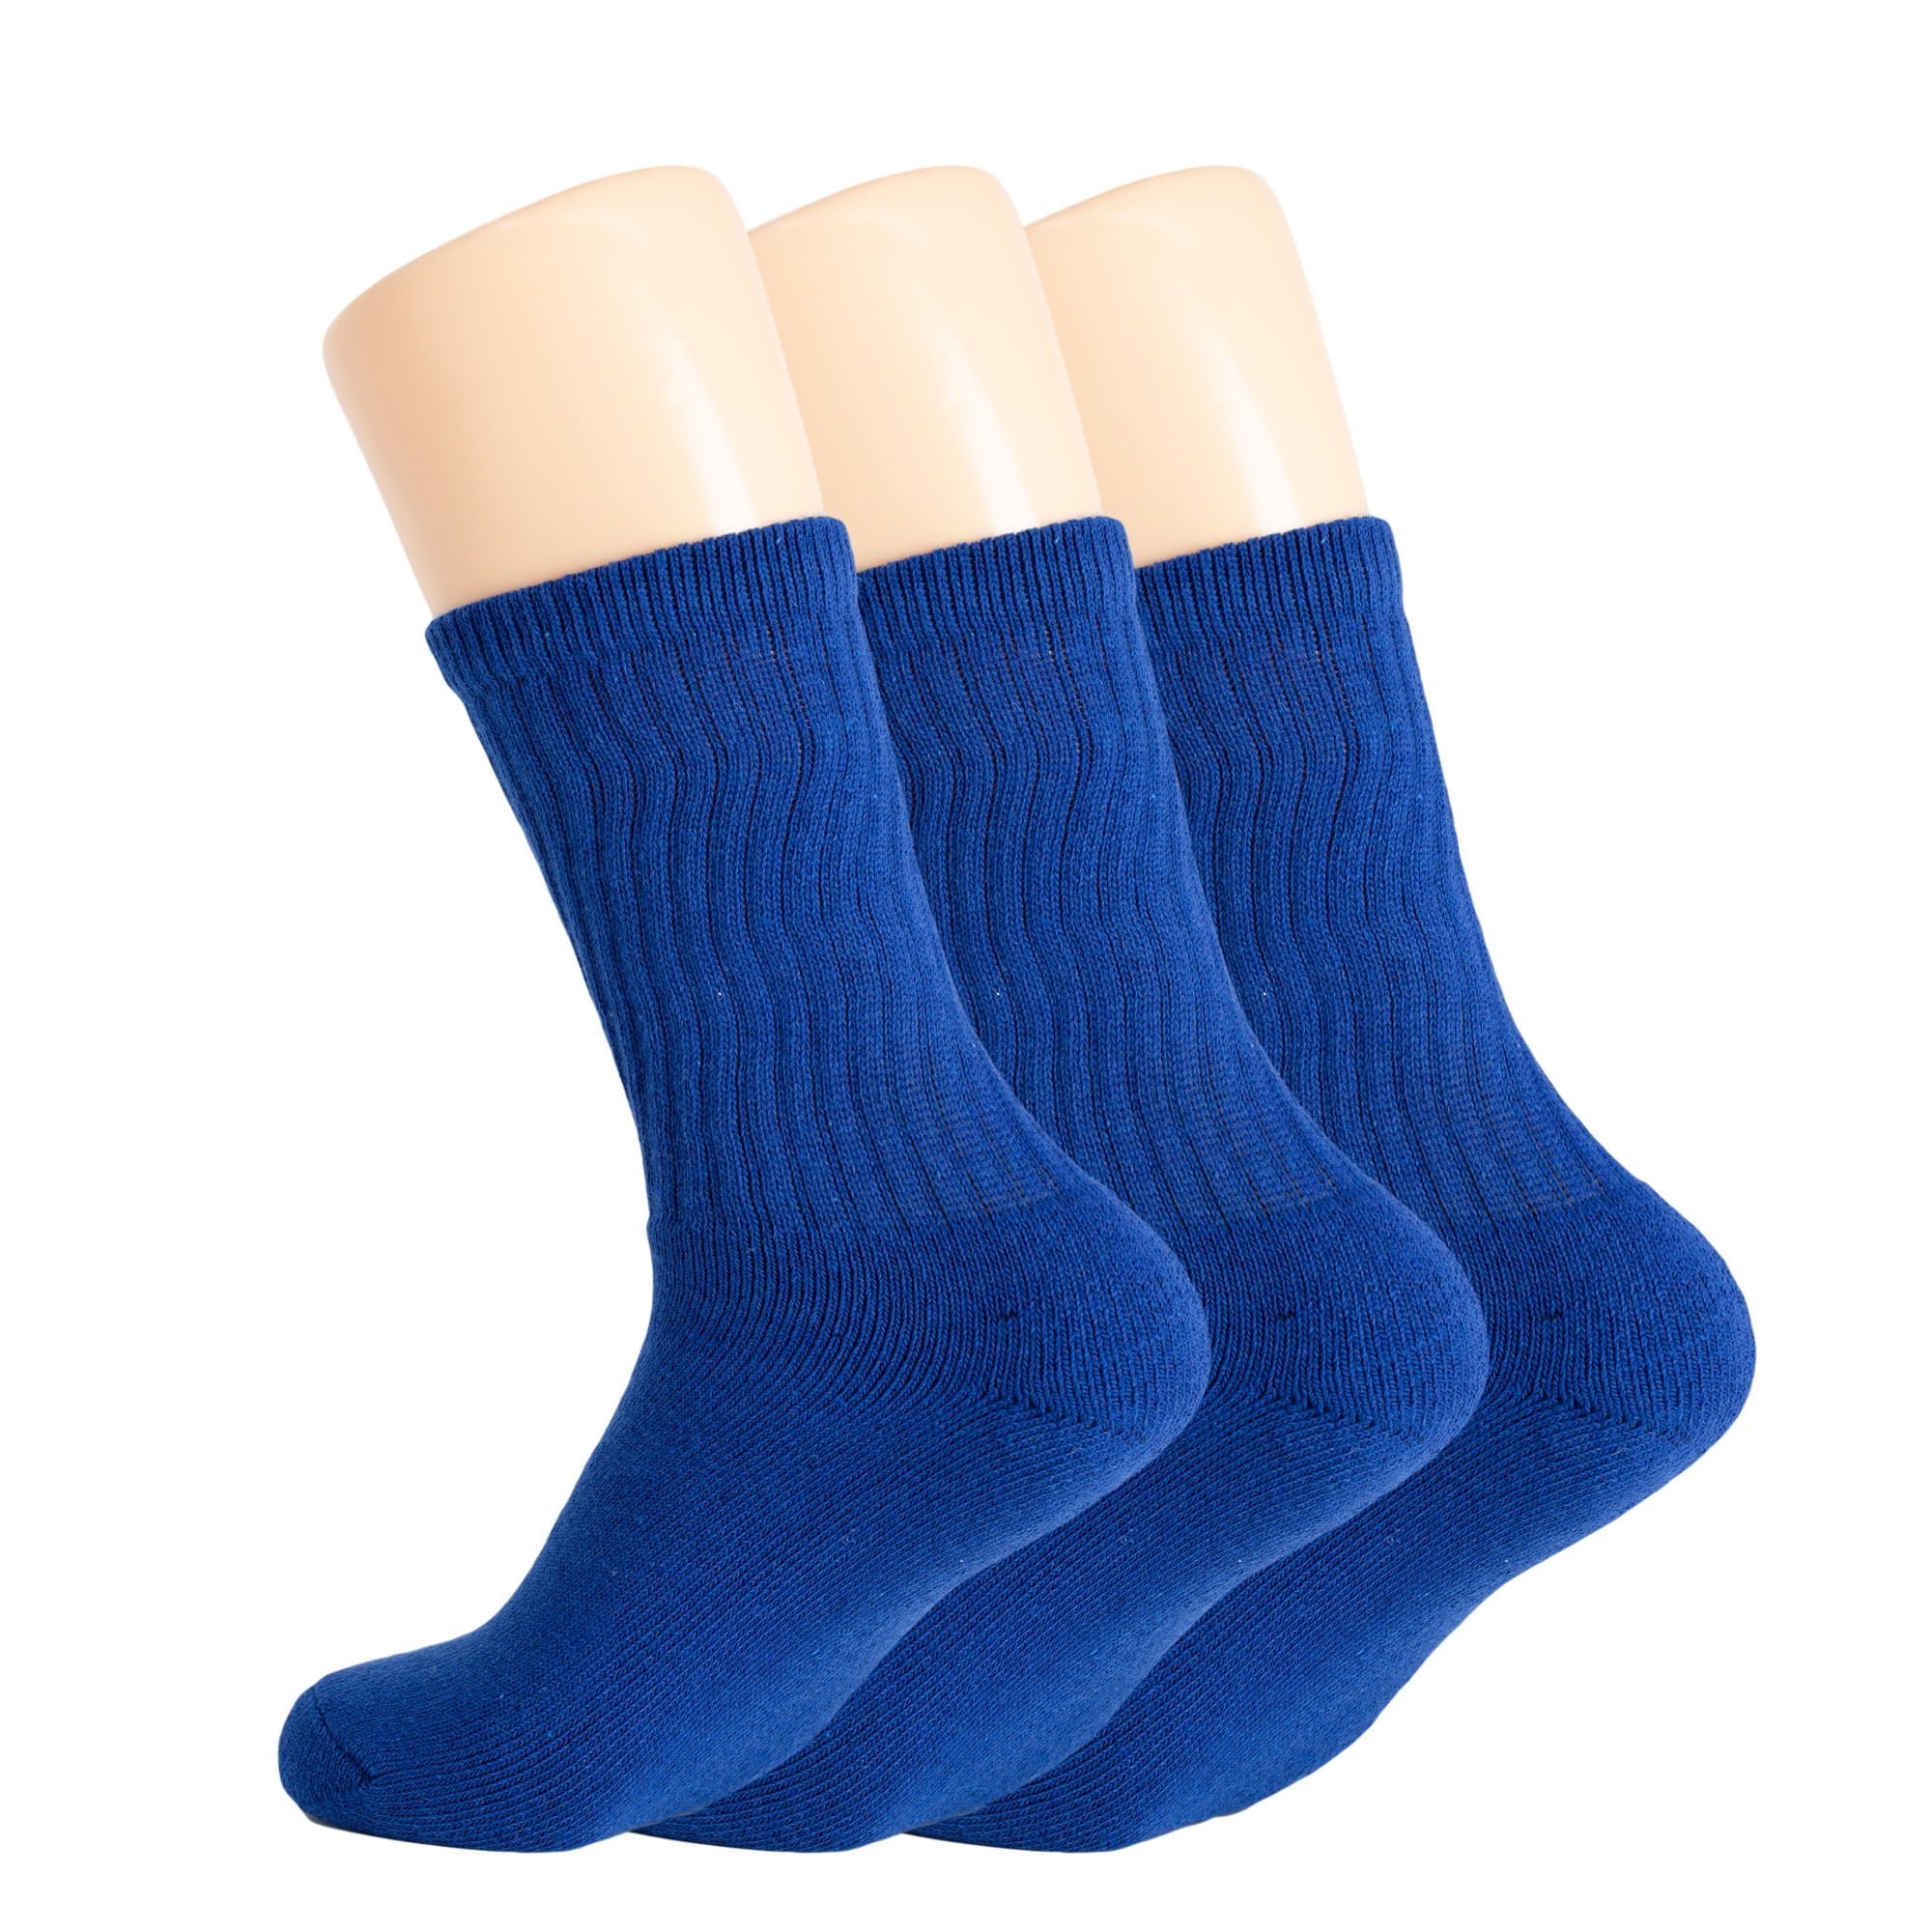 Cotton Crew Socks - Navy/Blue - TIEM